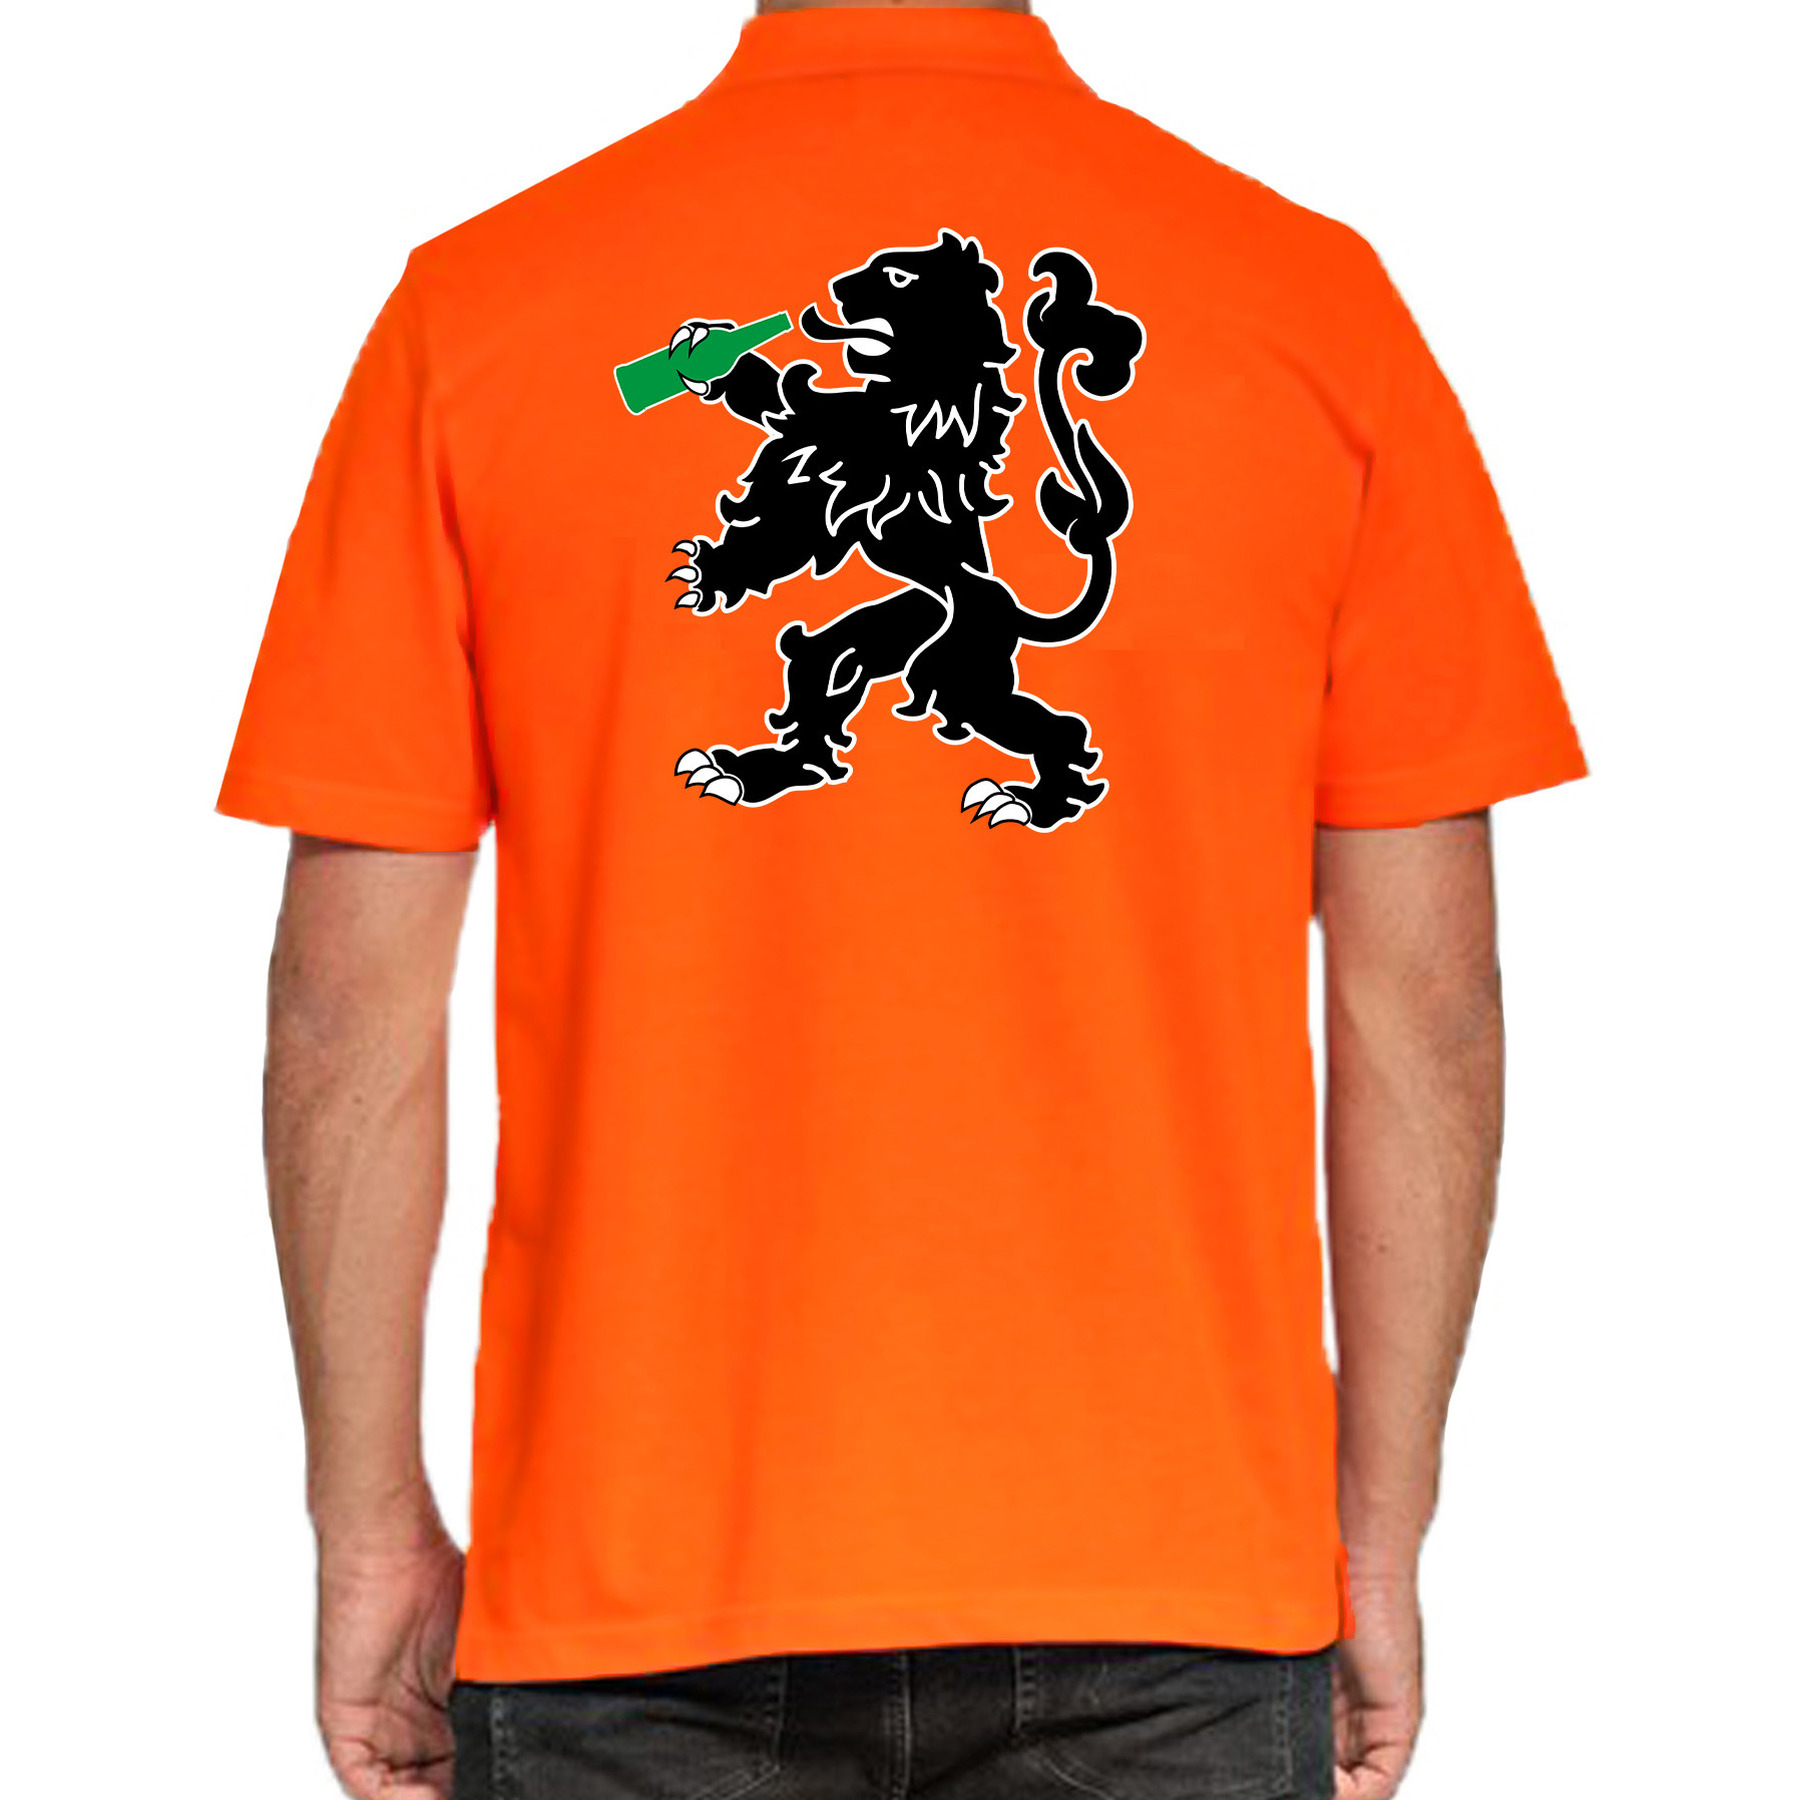 Grote maten Drinkende leeuw polo shirt oranje voor heren - Koningsdag polo shirts